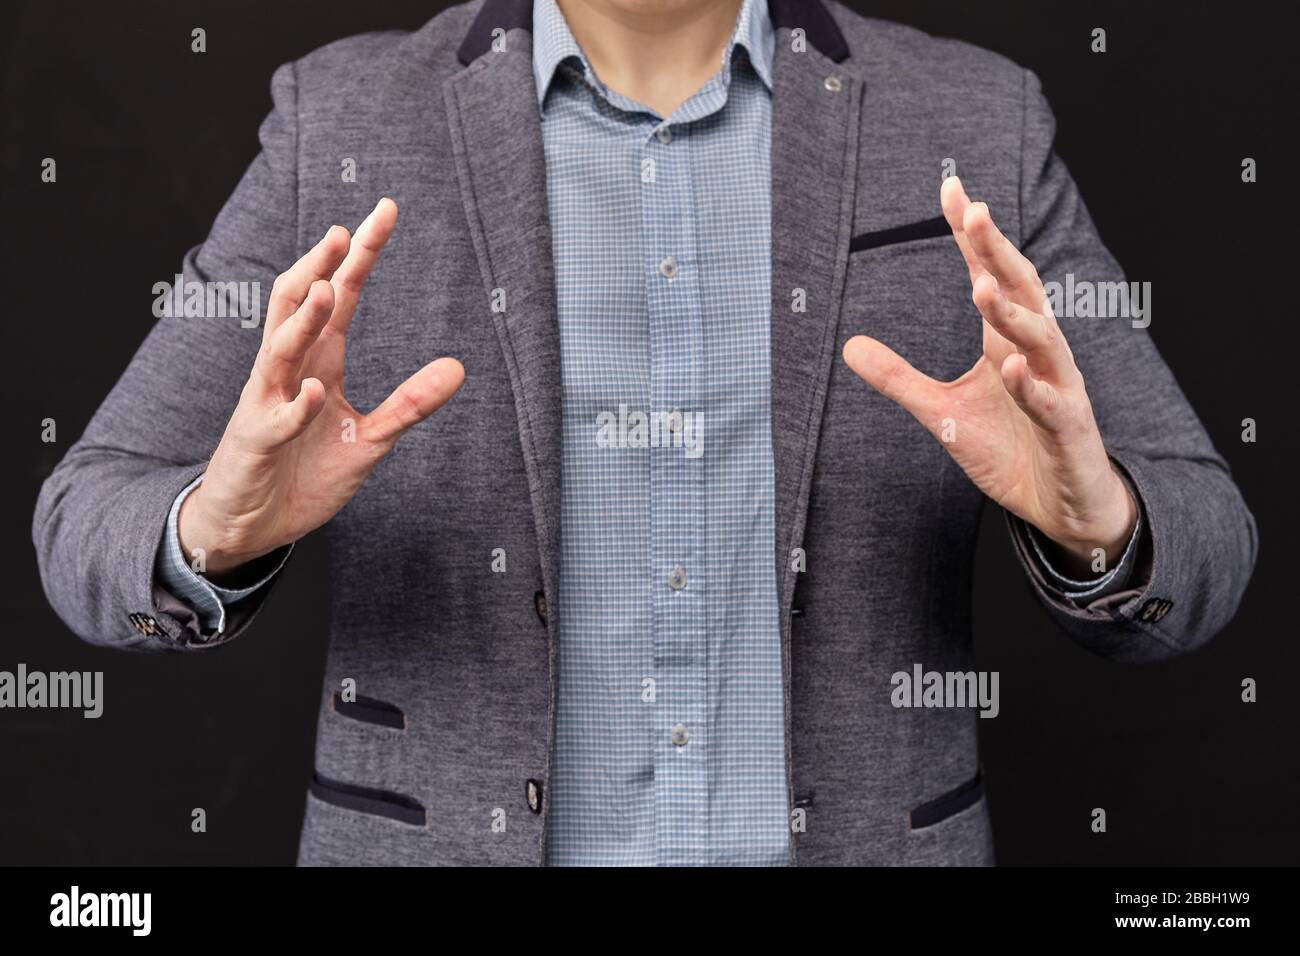 L'homme dans une veste montre avec ses mains un objet abstrait. Gros plan. Banque D'Images